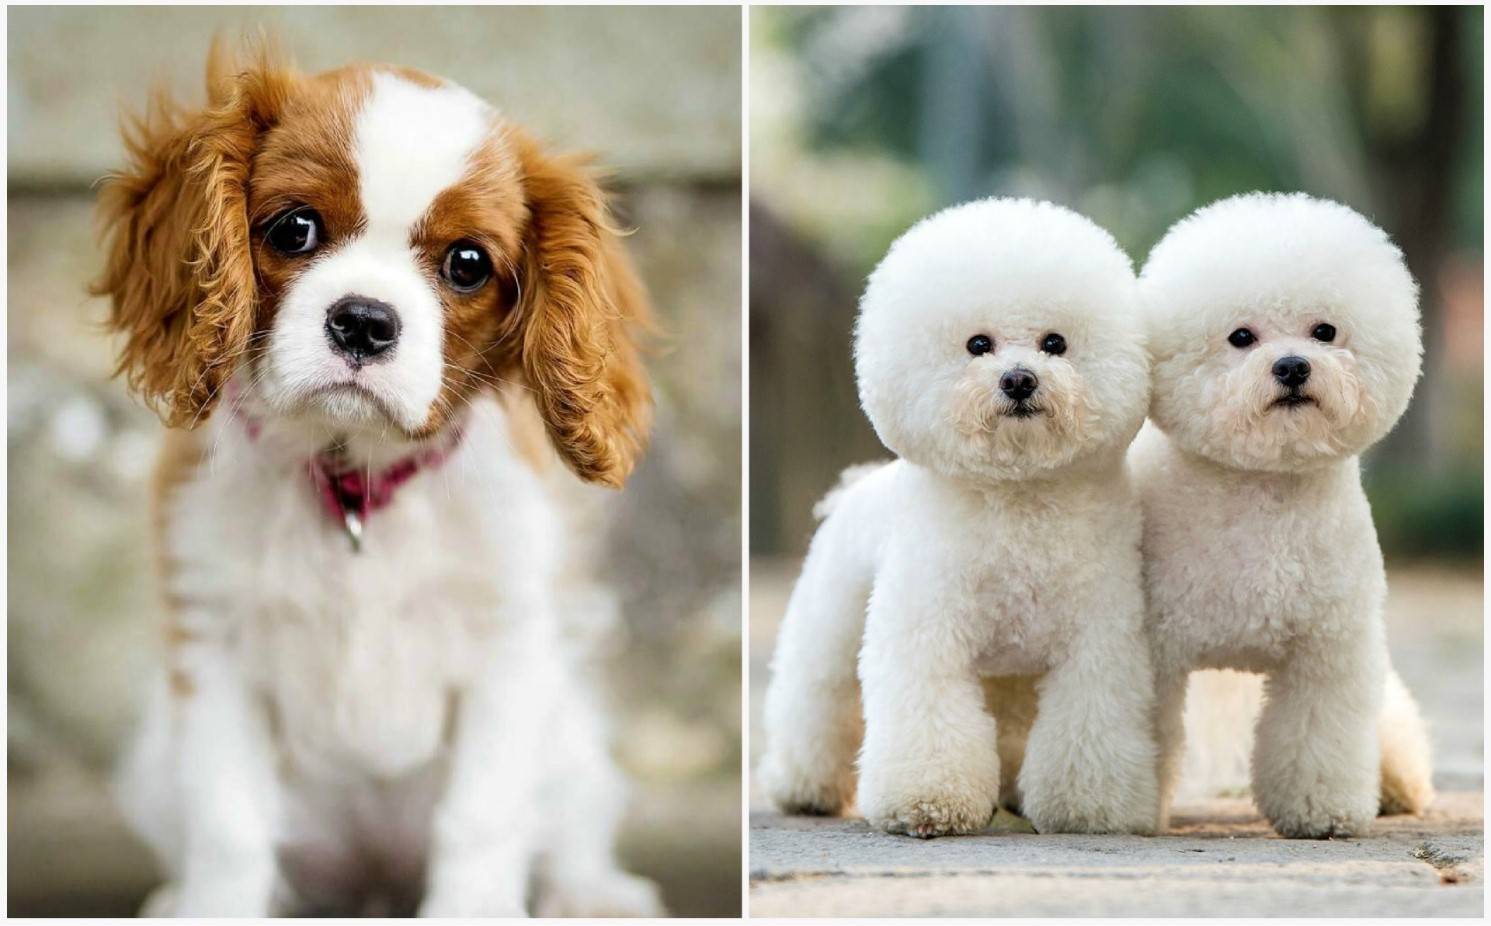 Самые красивые породы собак в мире: топ-10 фото с названиями (больших, маленьких и средних размеров, разных окрасов), умные и покладистые особи